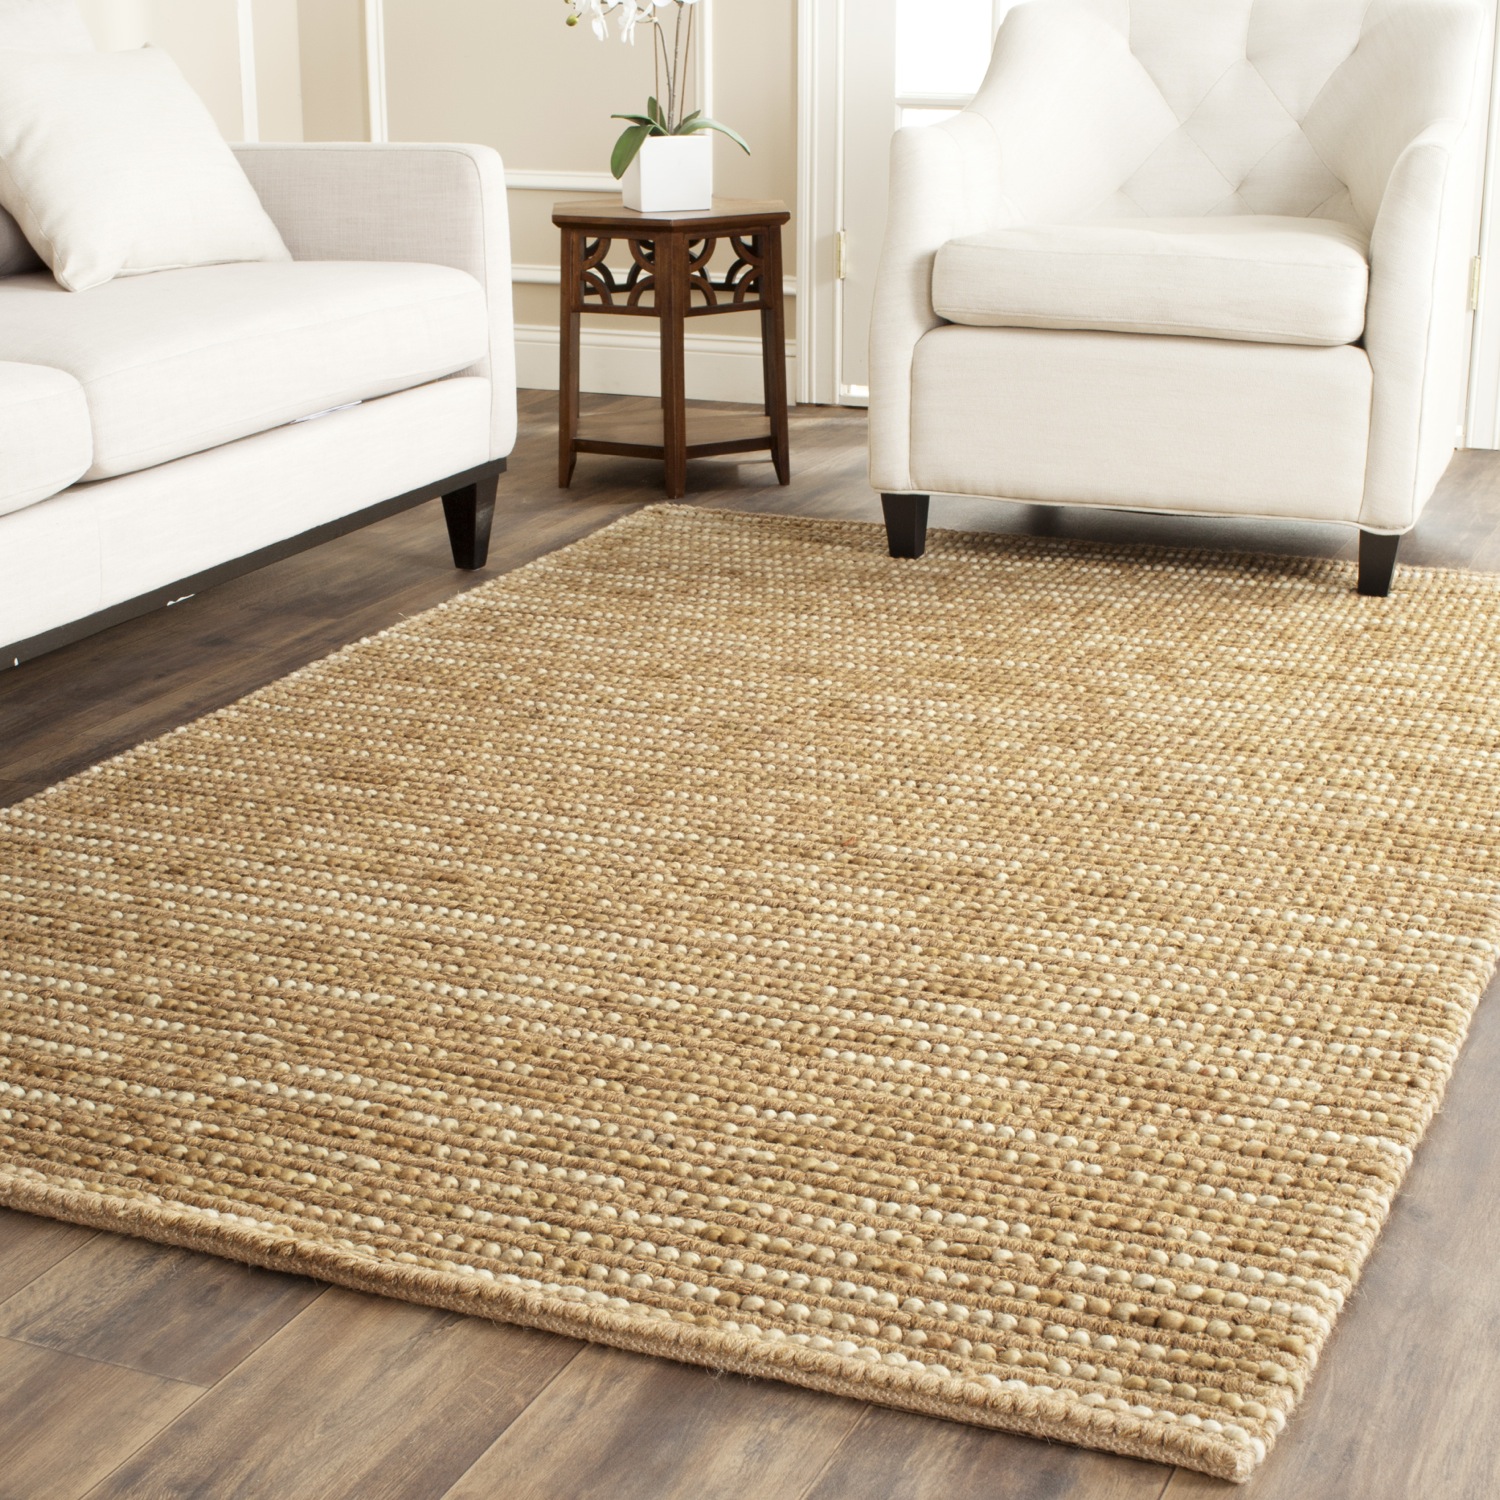 polyamide carpet